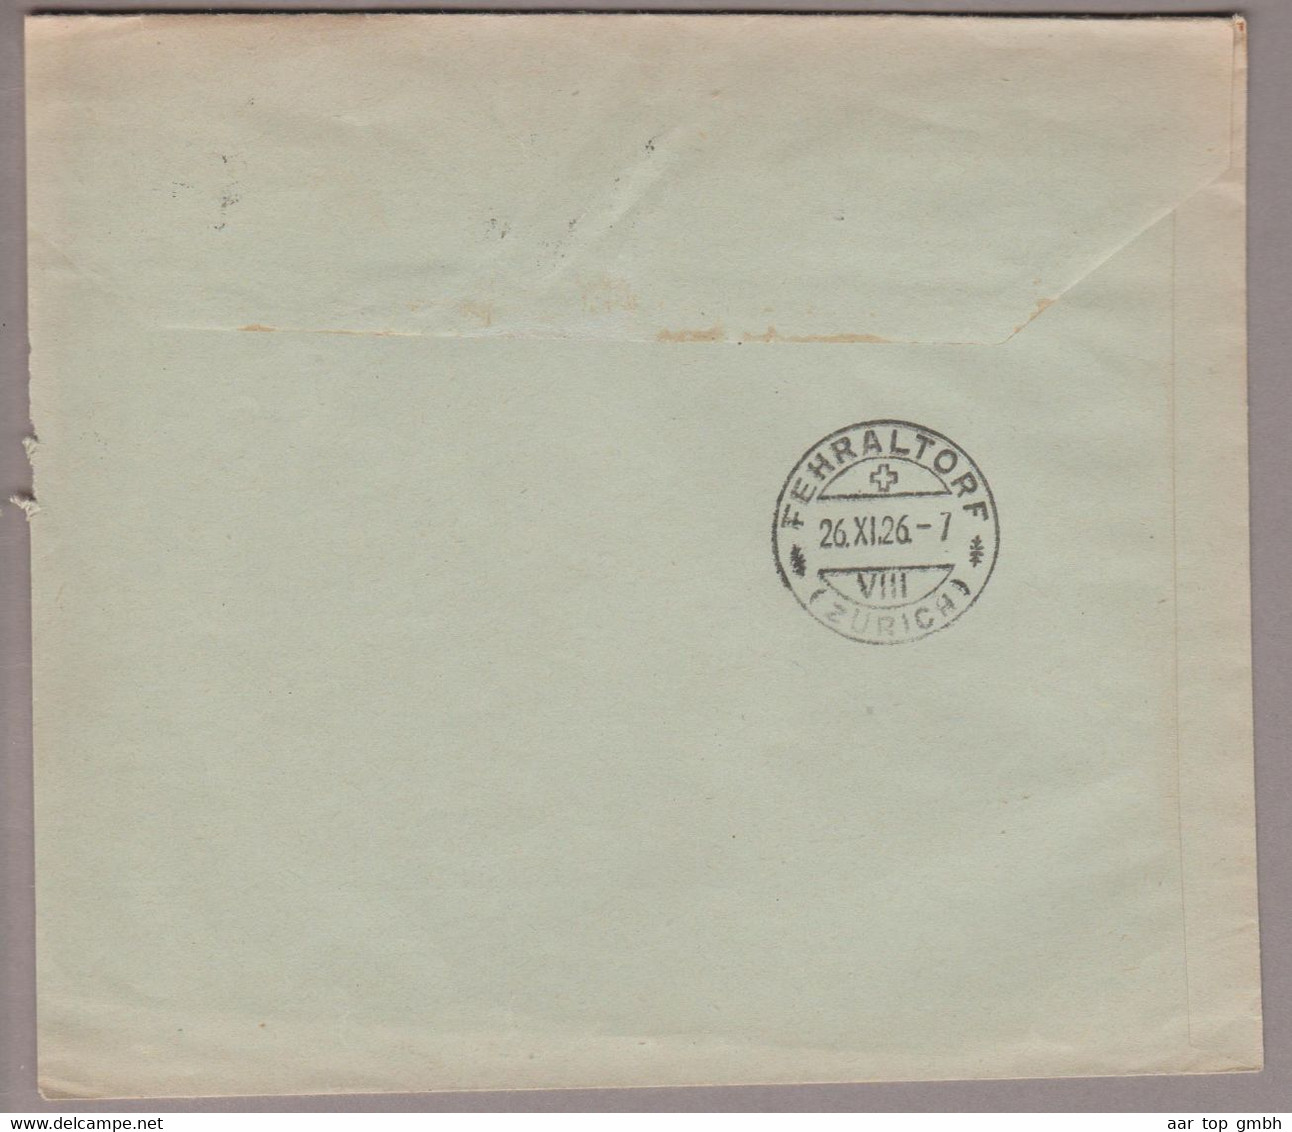 CH Portofreiheit Zu#10 20Rp. GR#836 Brief 1926-11-25 Zürich Kinderspital Zürich - Vrijstelling Van Portkosten